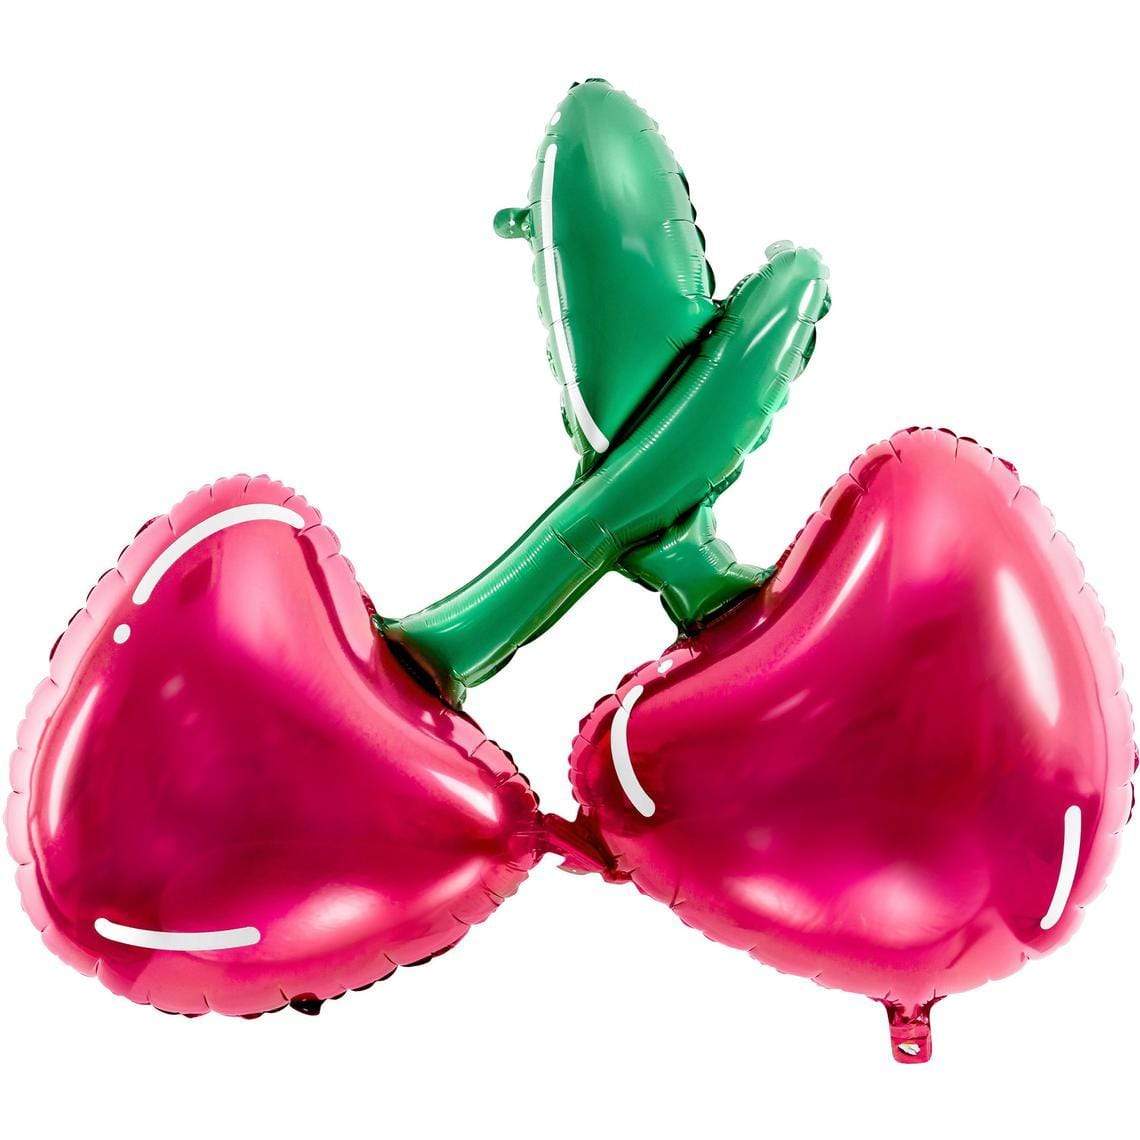 Giant Cherry Balloon | Cherries Foil Balloon UK Party Deco